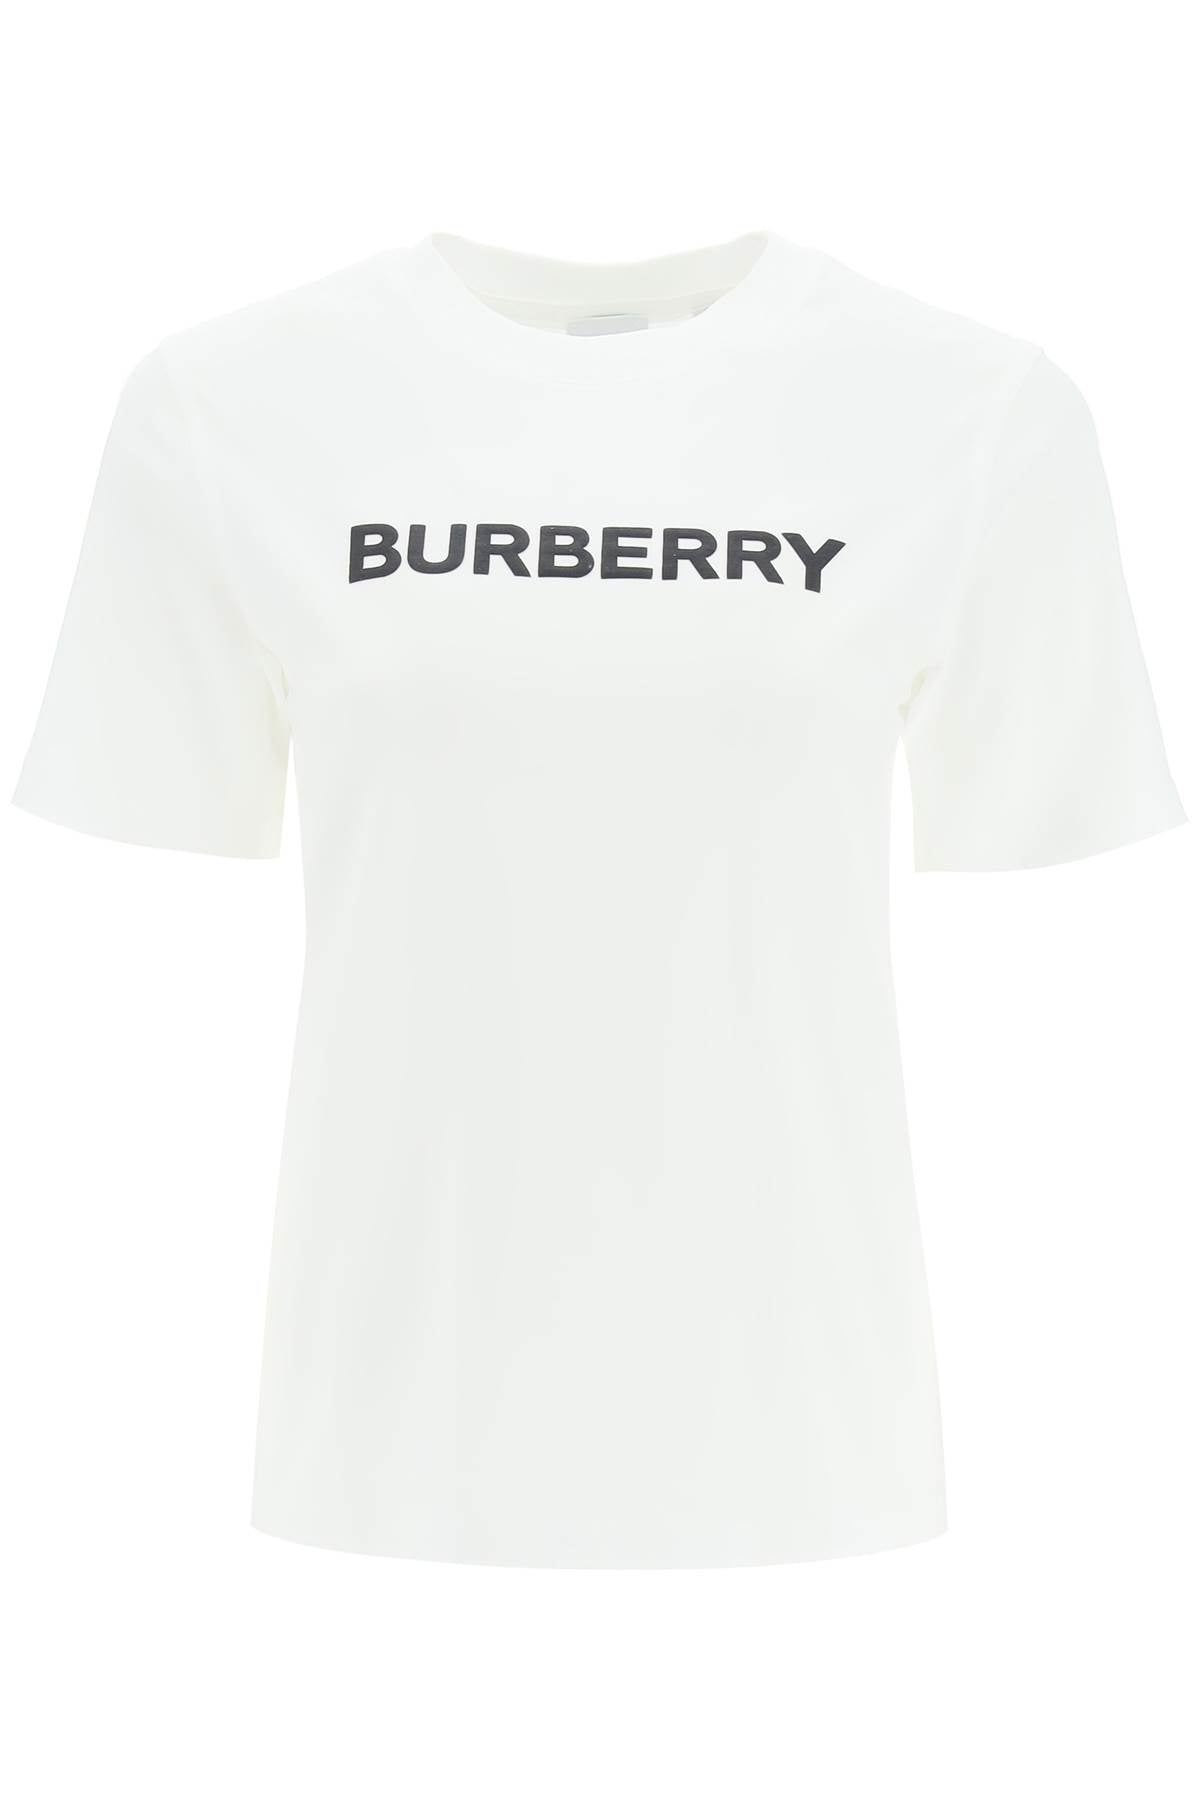 Burberry Burberry logo t-shirt